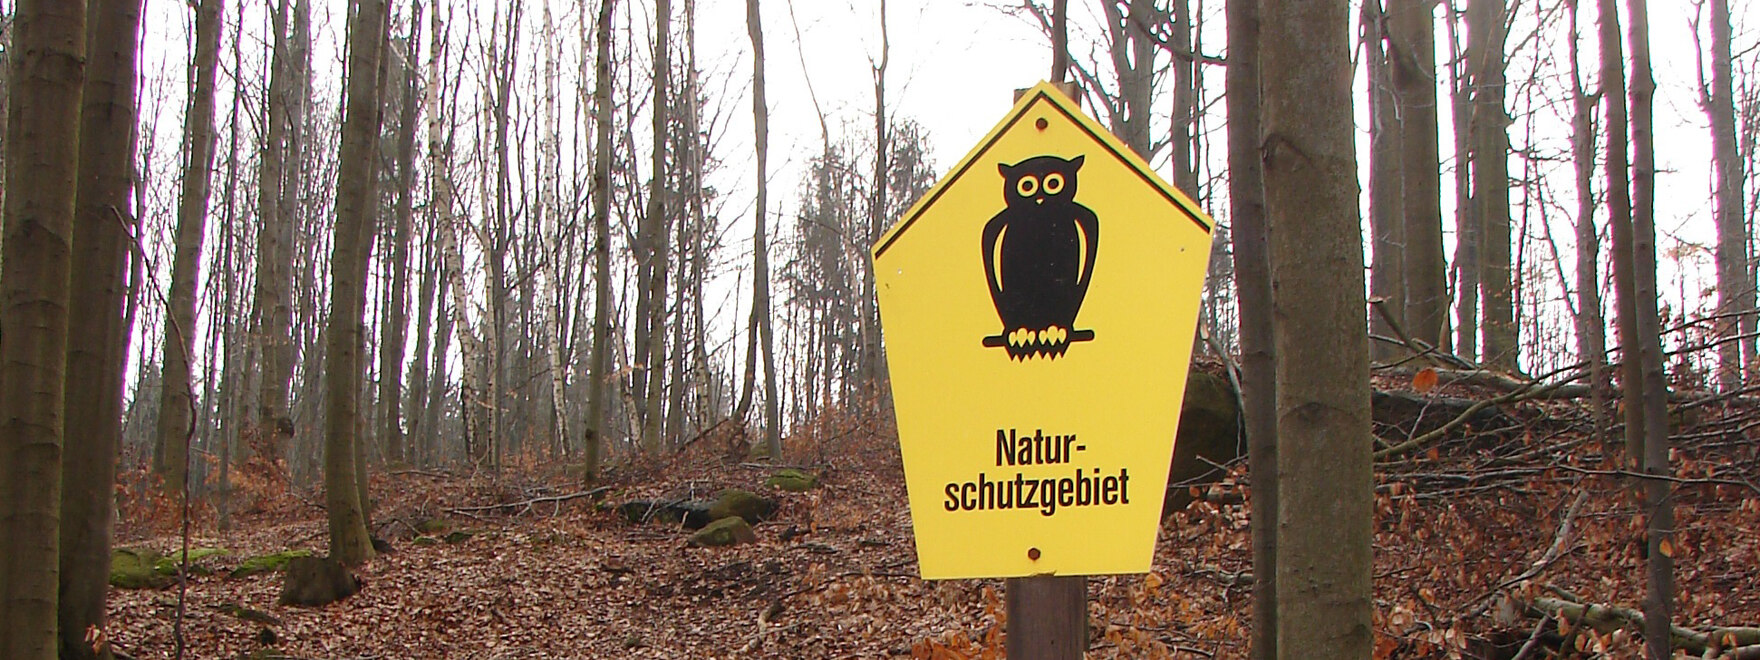 Blick in einen Wald, im Vordergrund ein Naturschutz-Schild